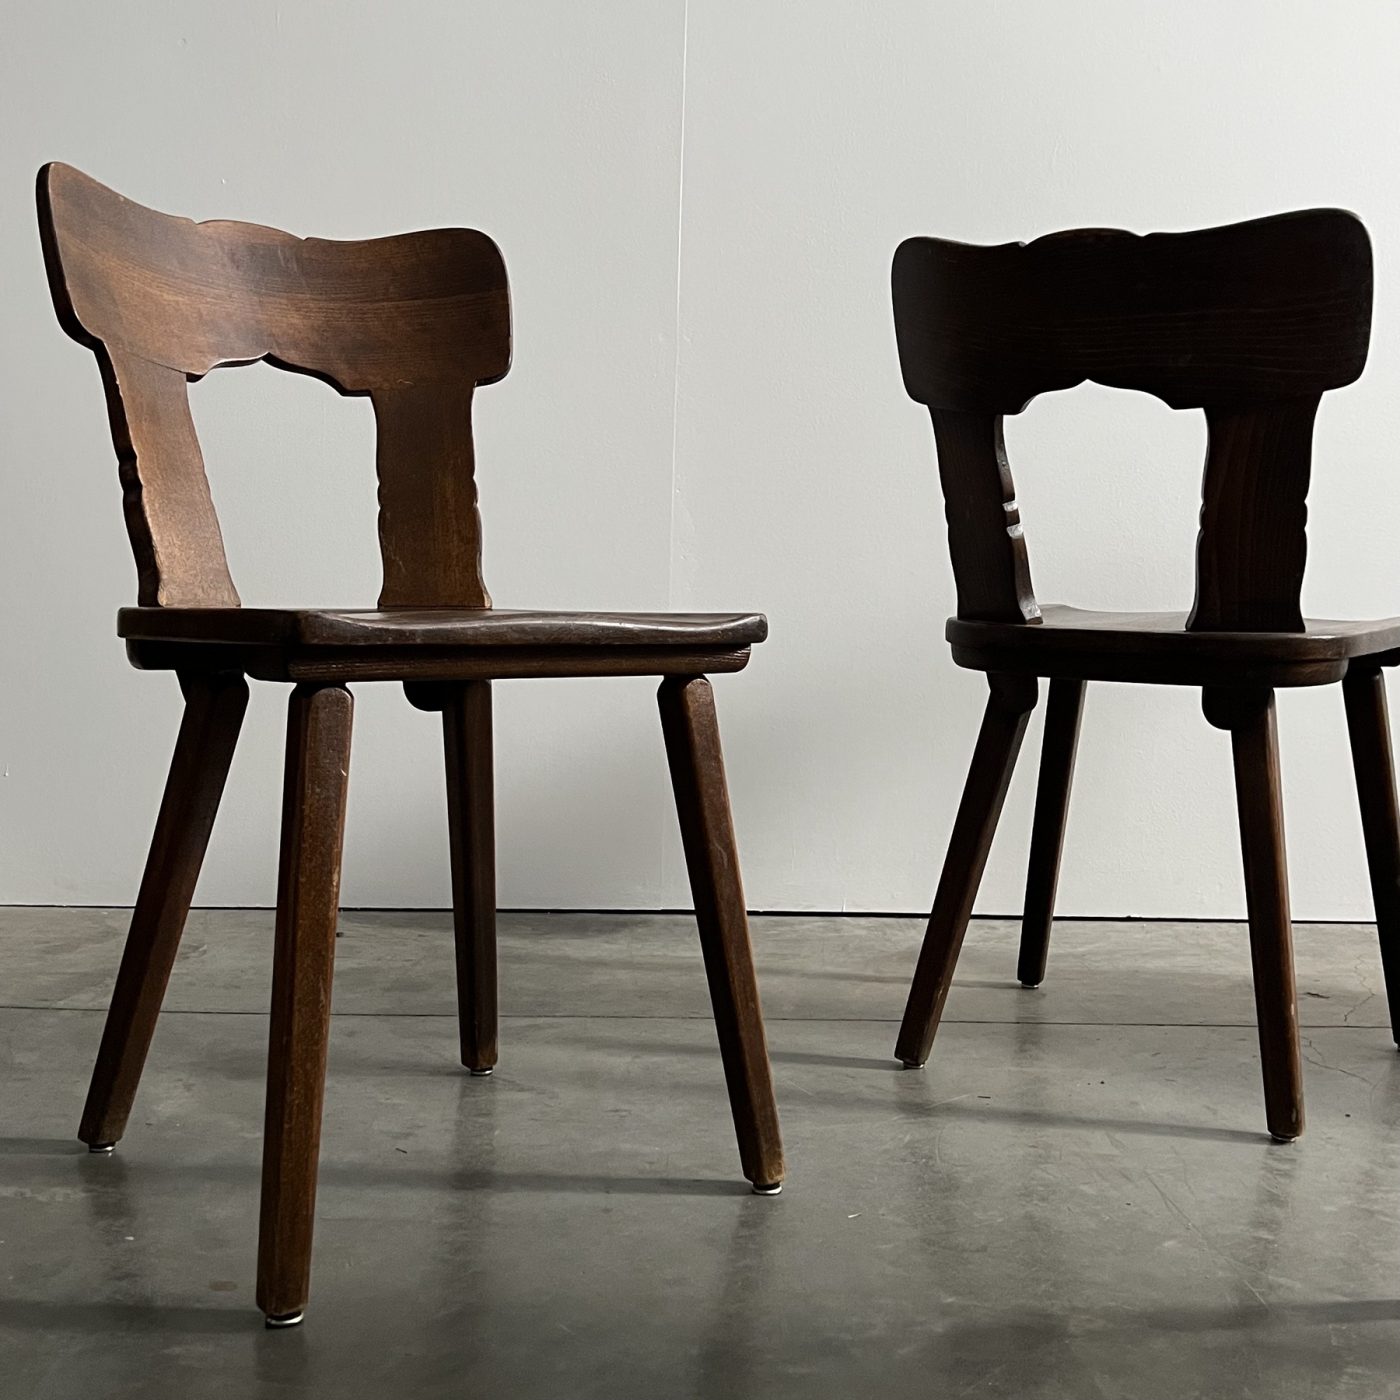 objet-vagabond-bistrot-chairs0006